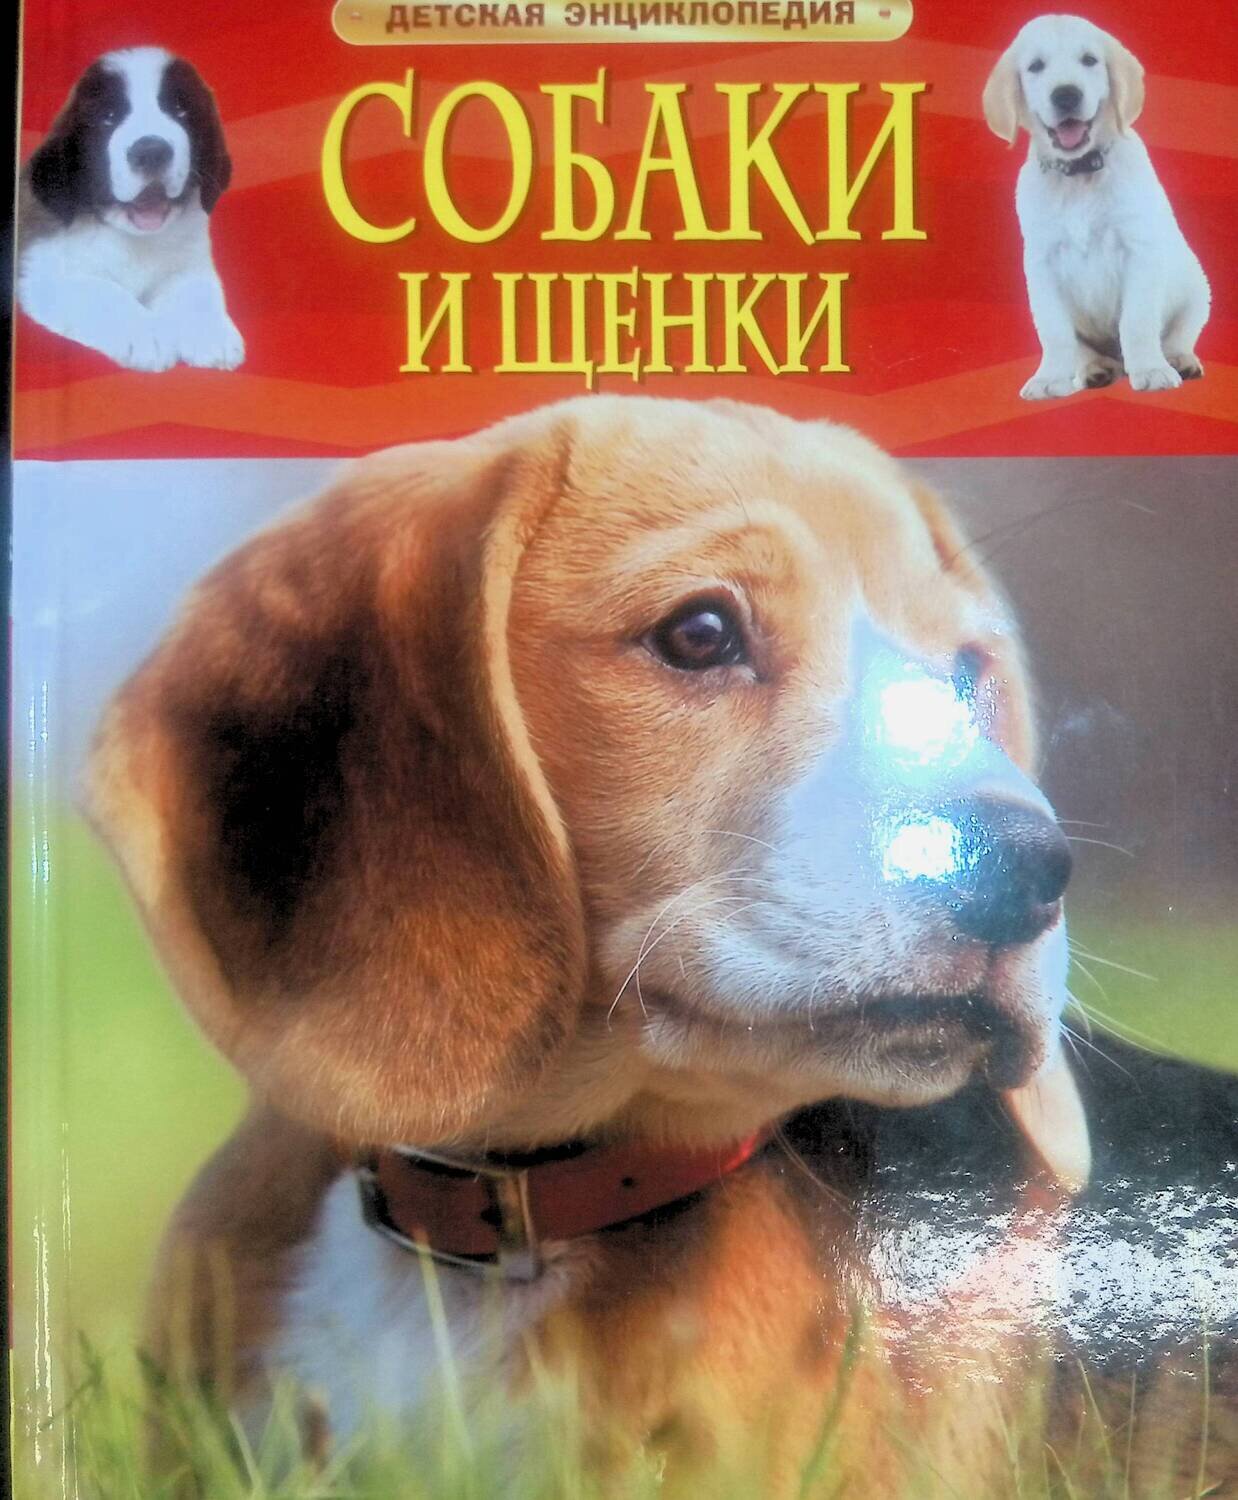 Собаки и щенки; Автор не указан